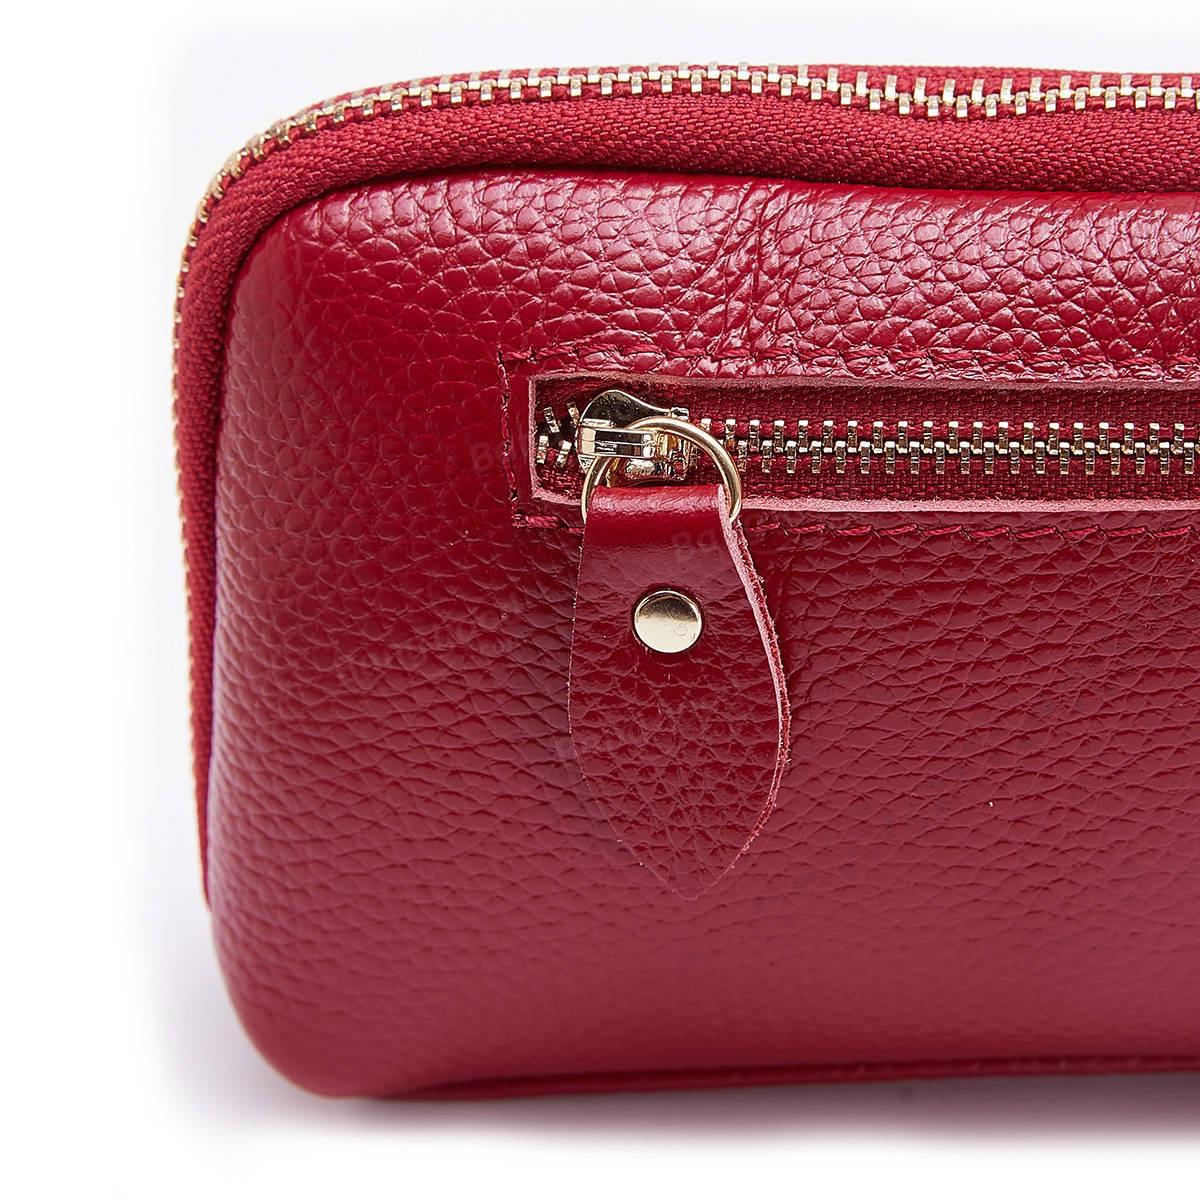 lovevop Women Genuine Leather Clutch Bag Zipper Long Wallet Two Fold Purse